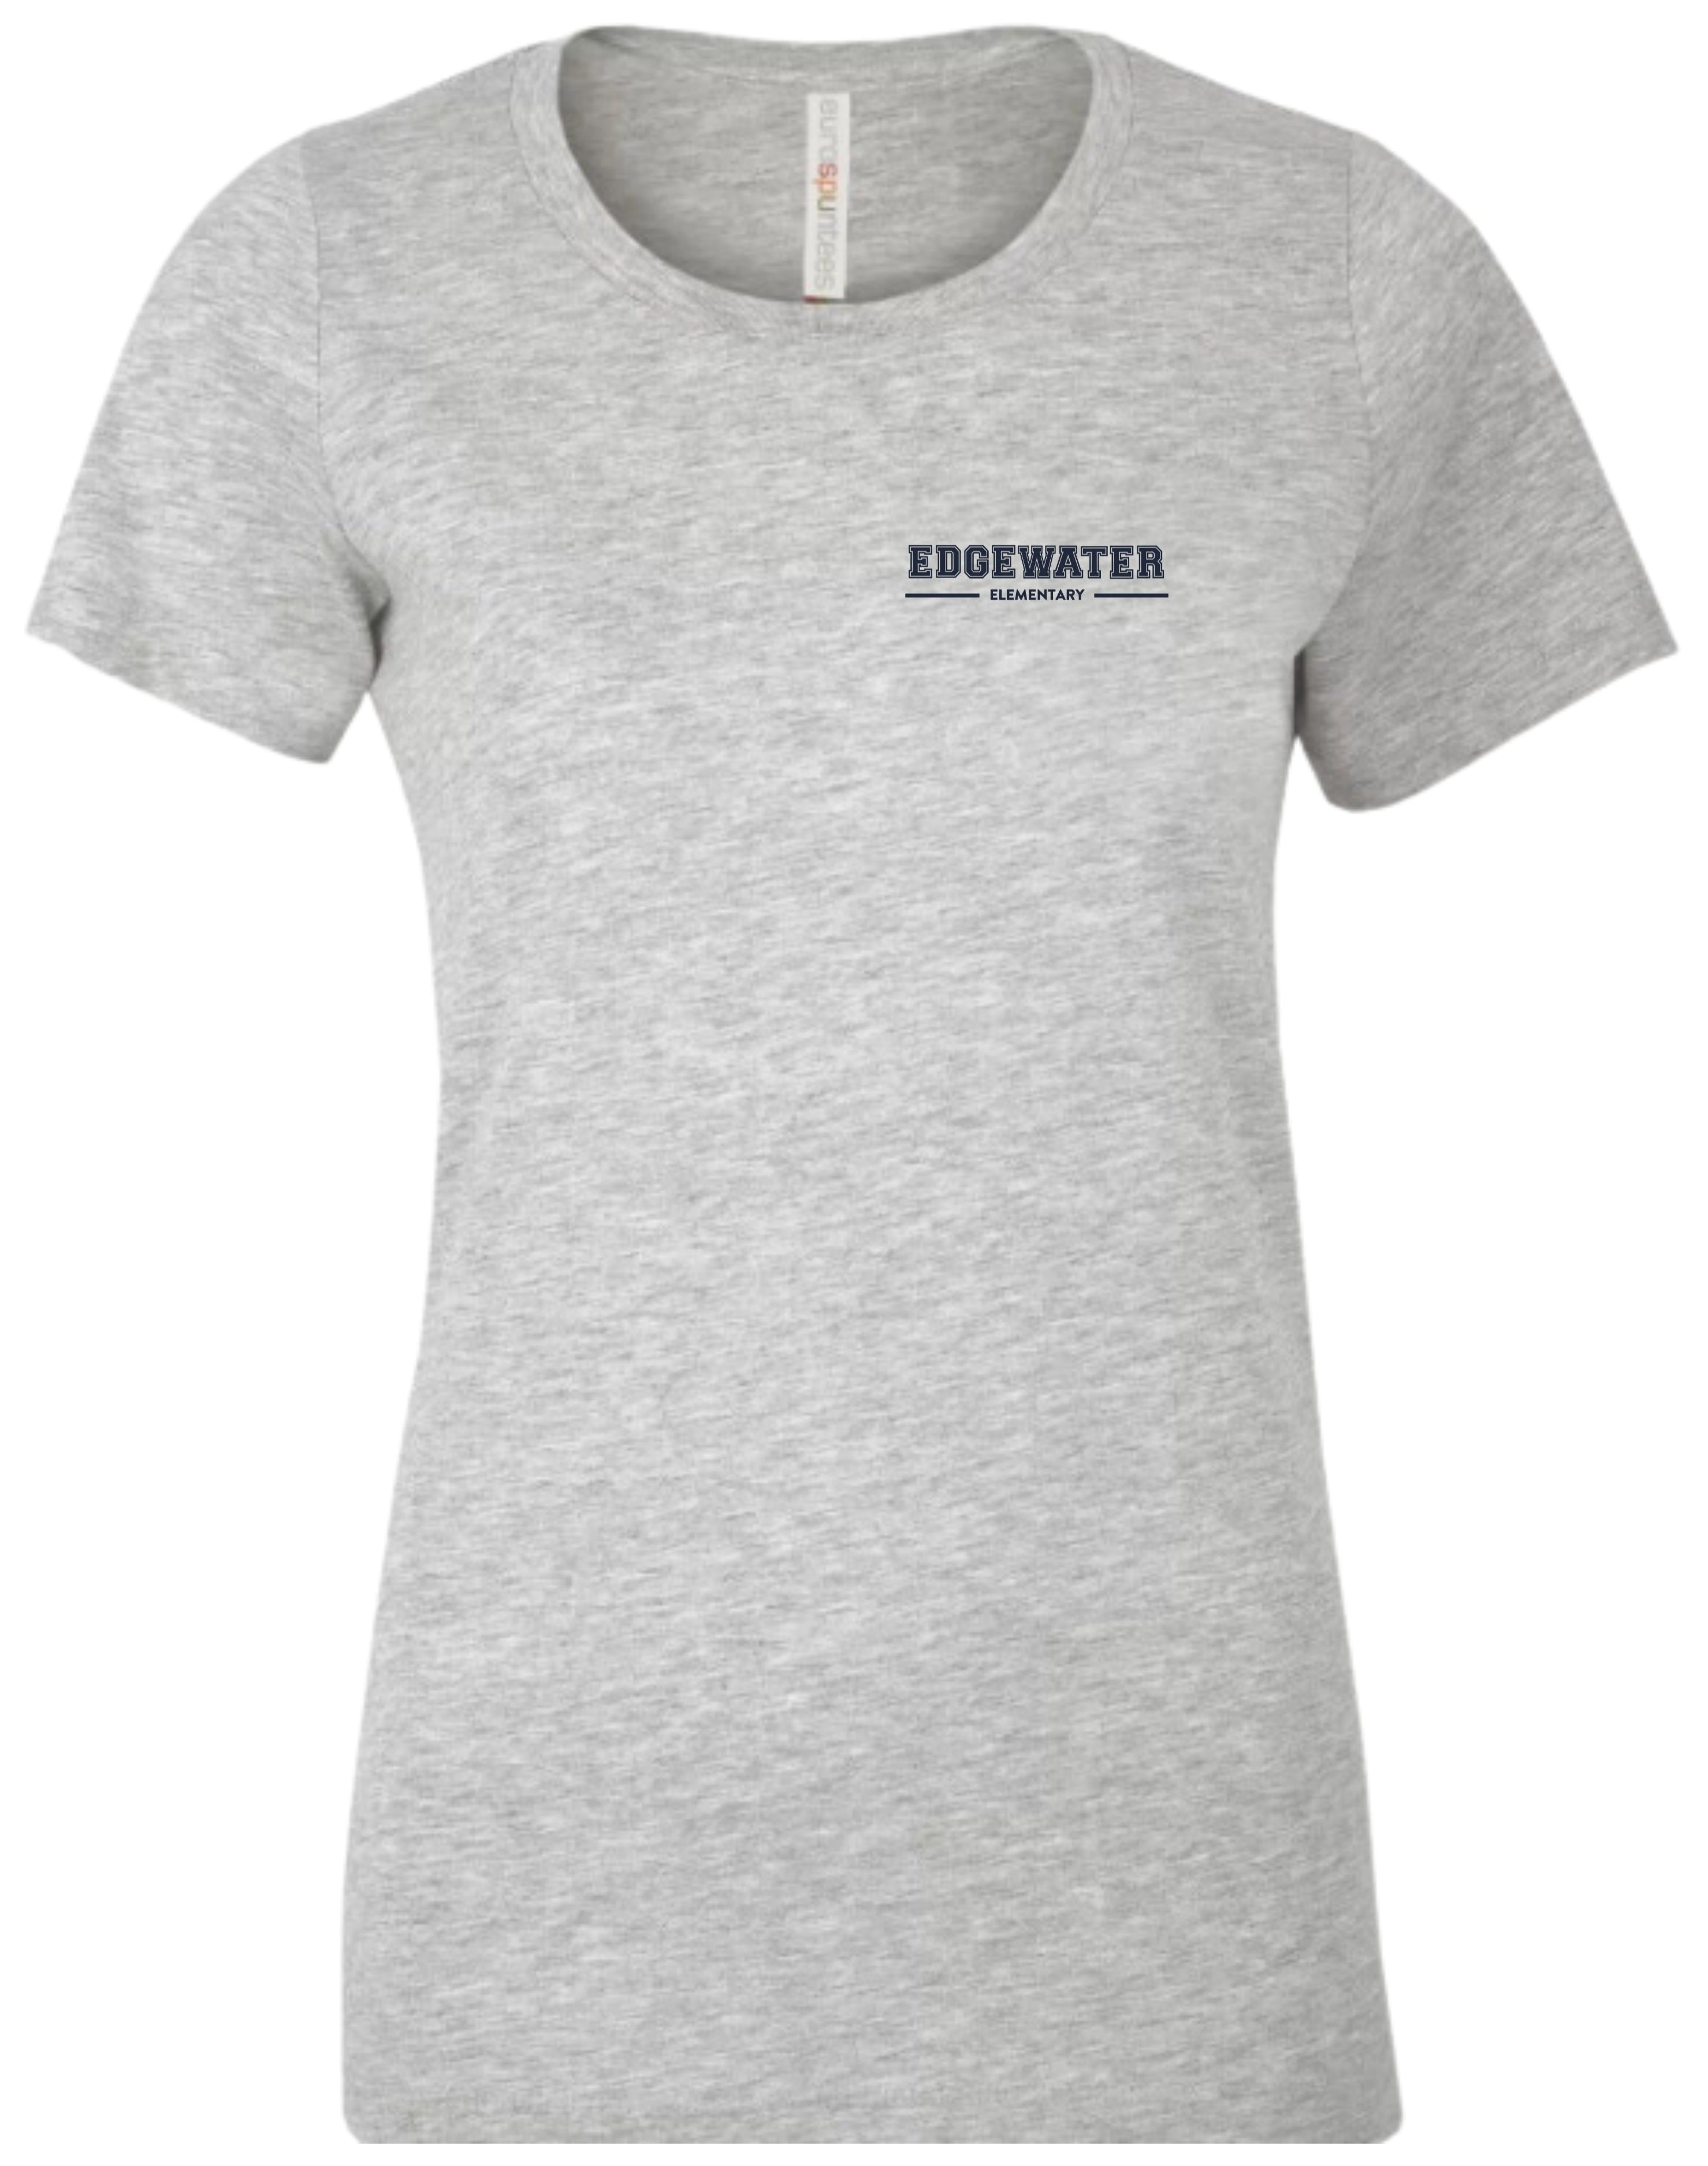 Edgewater Women's T-Shirt